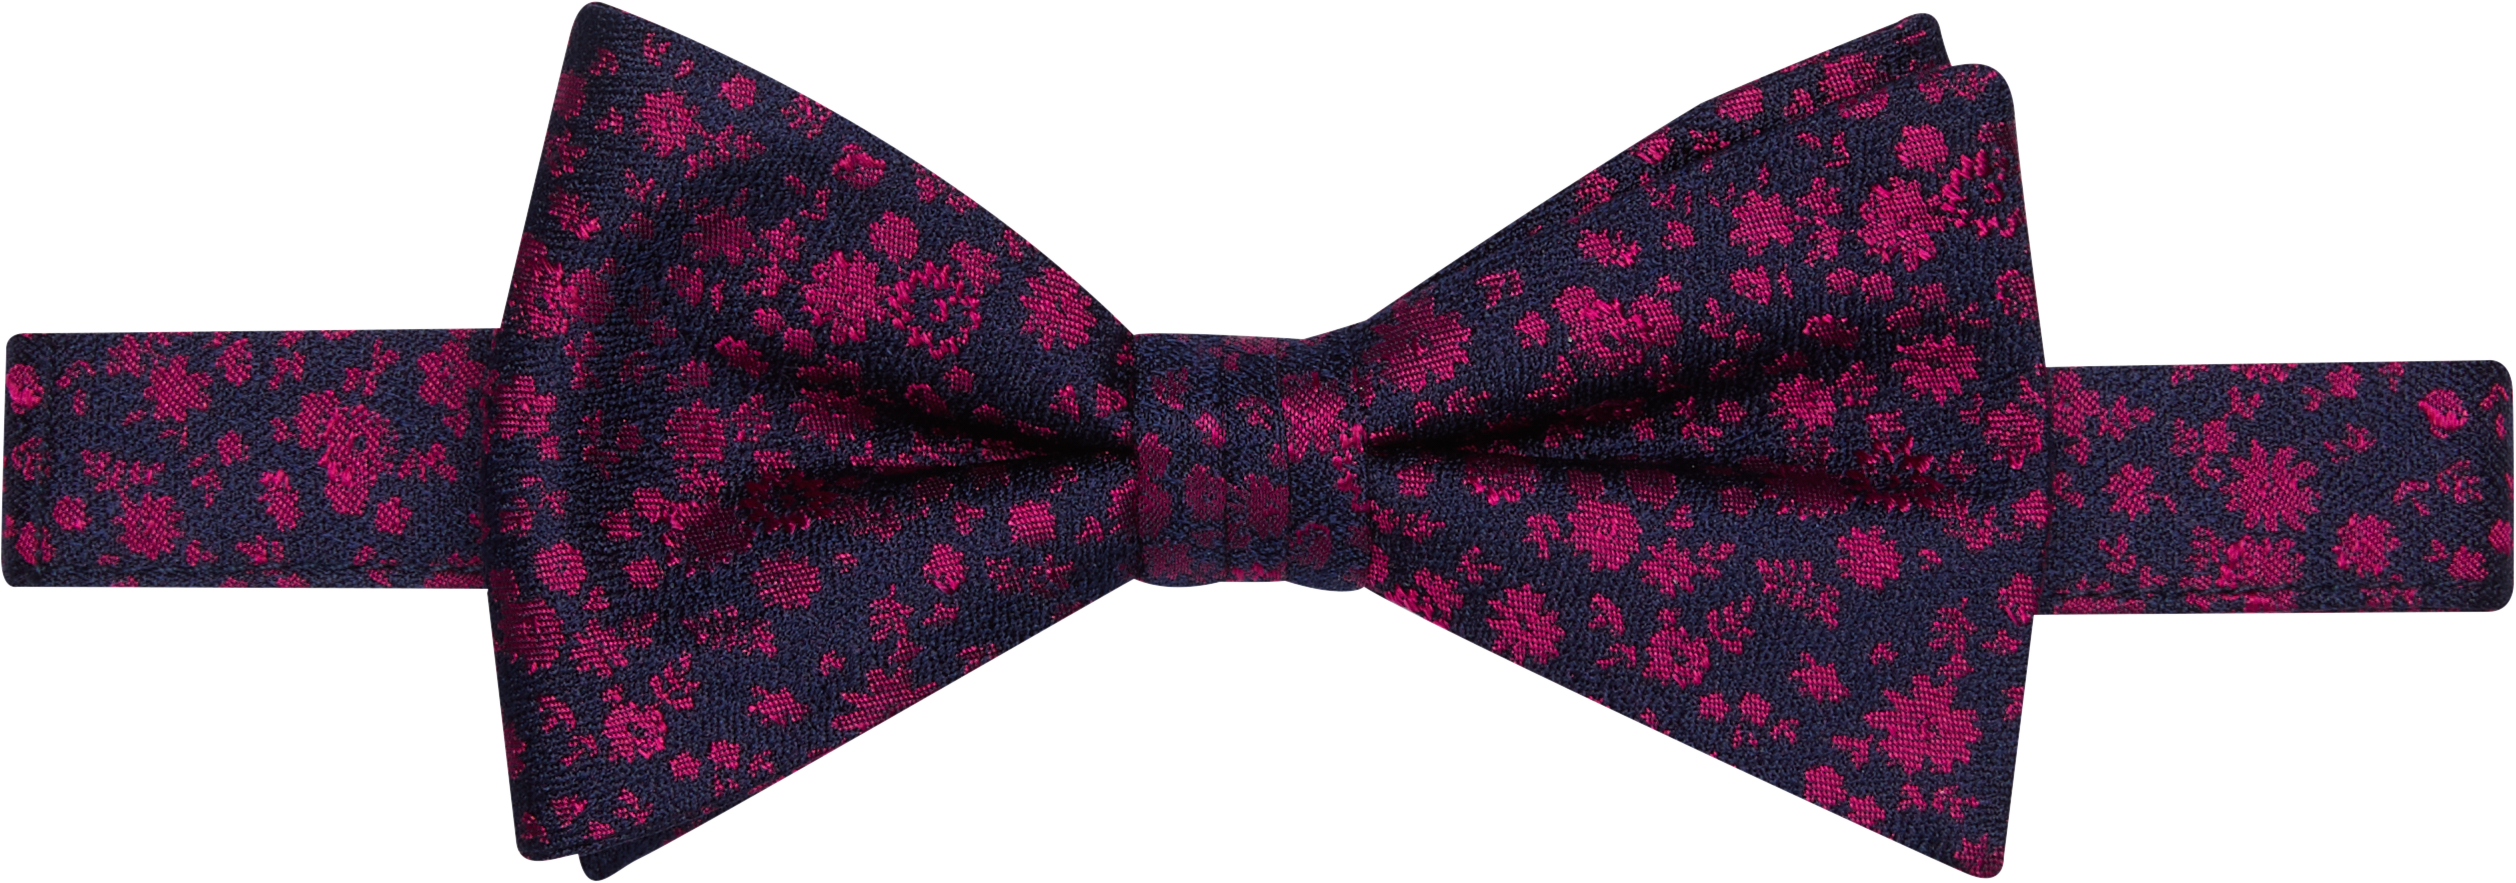 Floral Pre-Tied Bow Tie